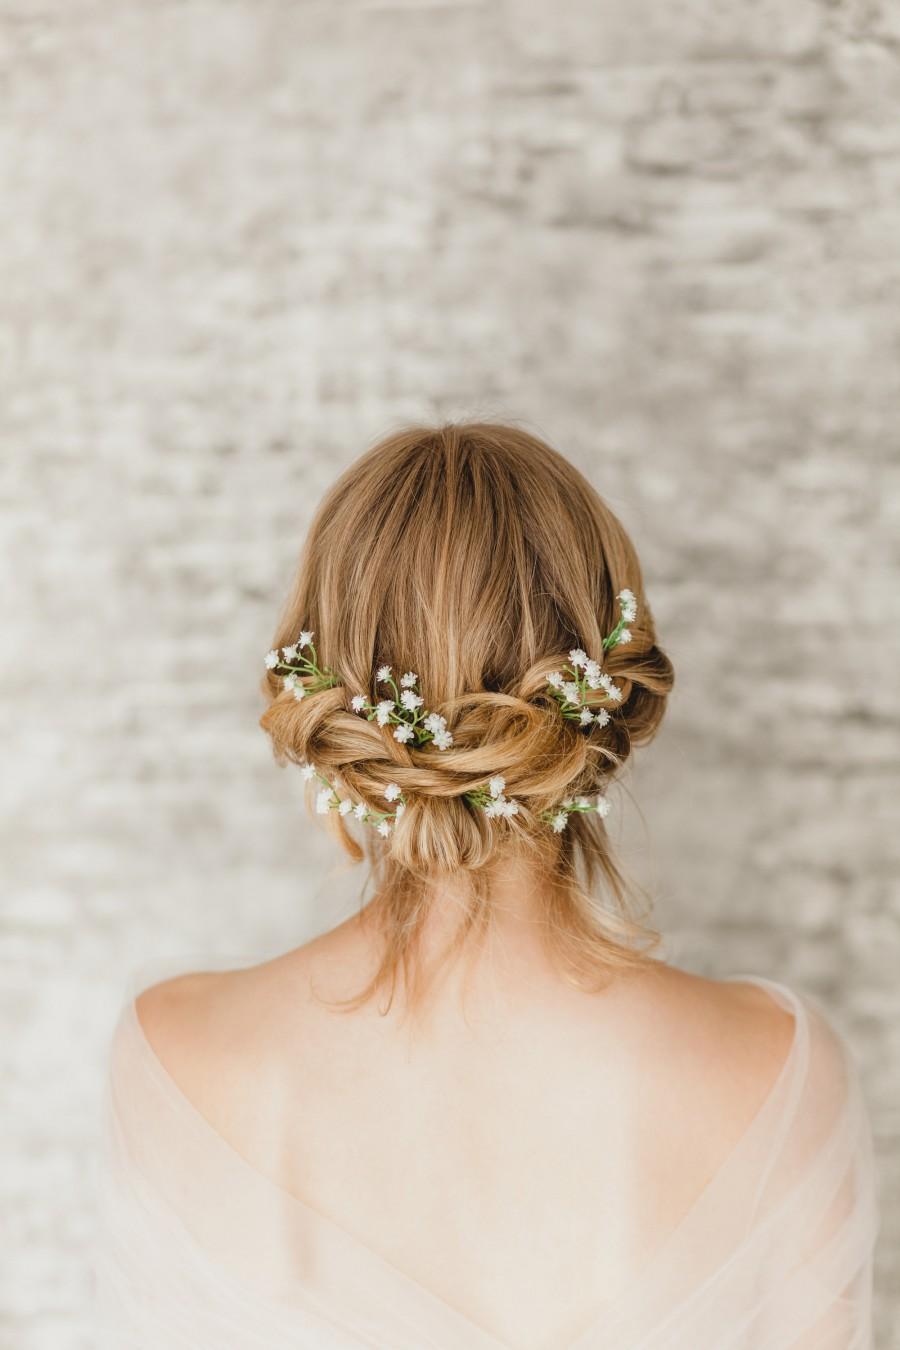 زفاف - Babys Breath Hair Pins Set 10 for Bridal, White Flower Bobby Pins for Bridesmaid Hair, Floral Headpiece with Gypsophila for Rustic Wedding